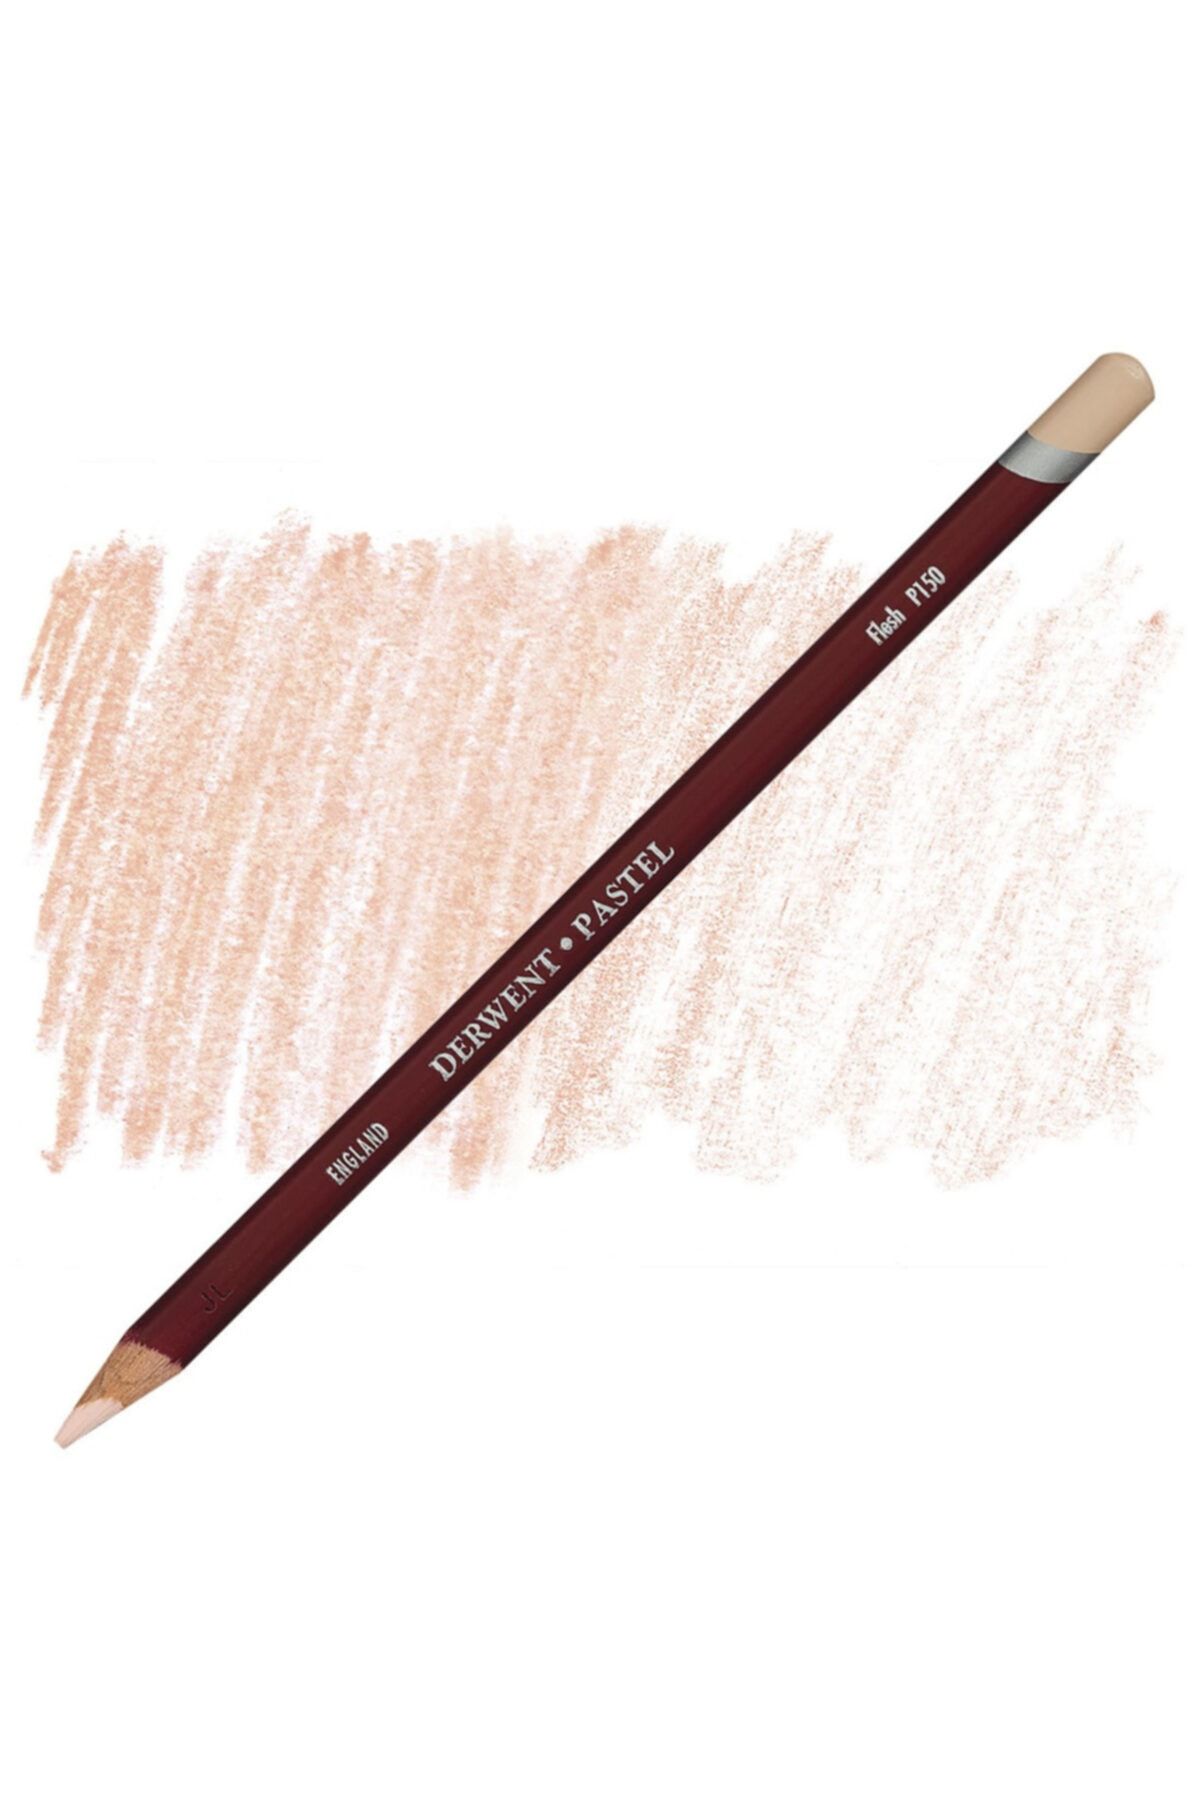 Derwent Pastel Pencil - Flesh